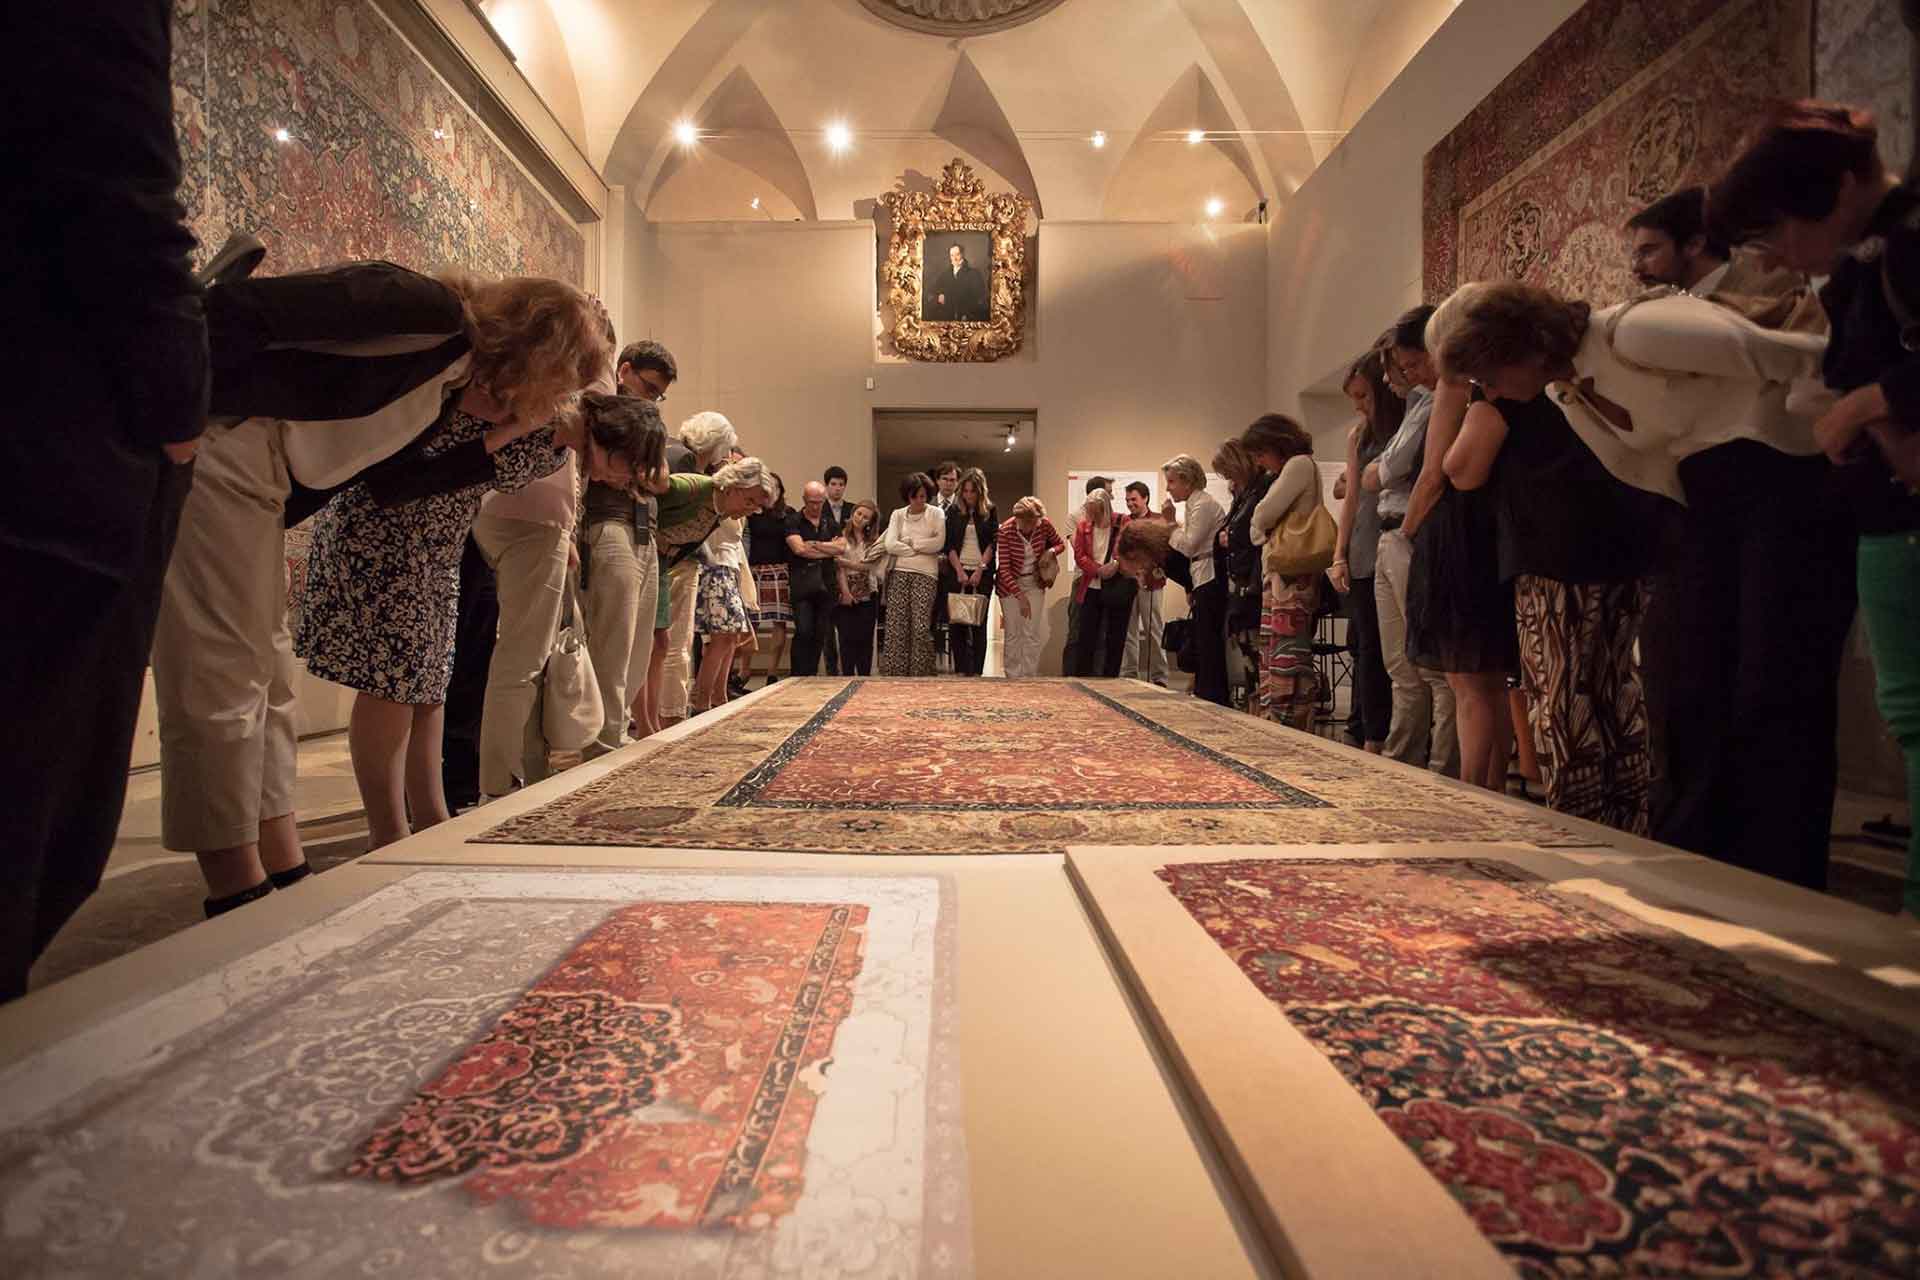 Un gruppo di persone osserva attentamente antichi tappeti esposti nella sala dell'affresco del museo poldi pezzoli.